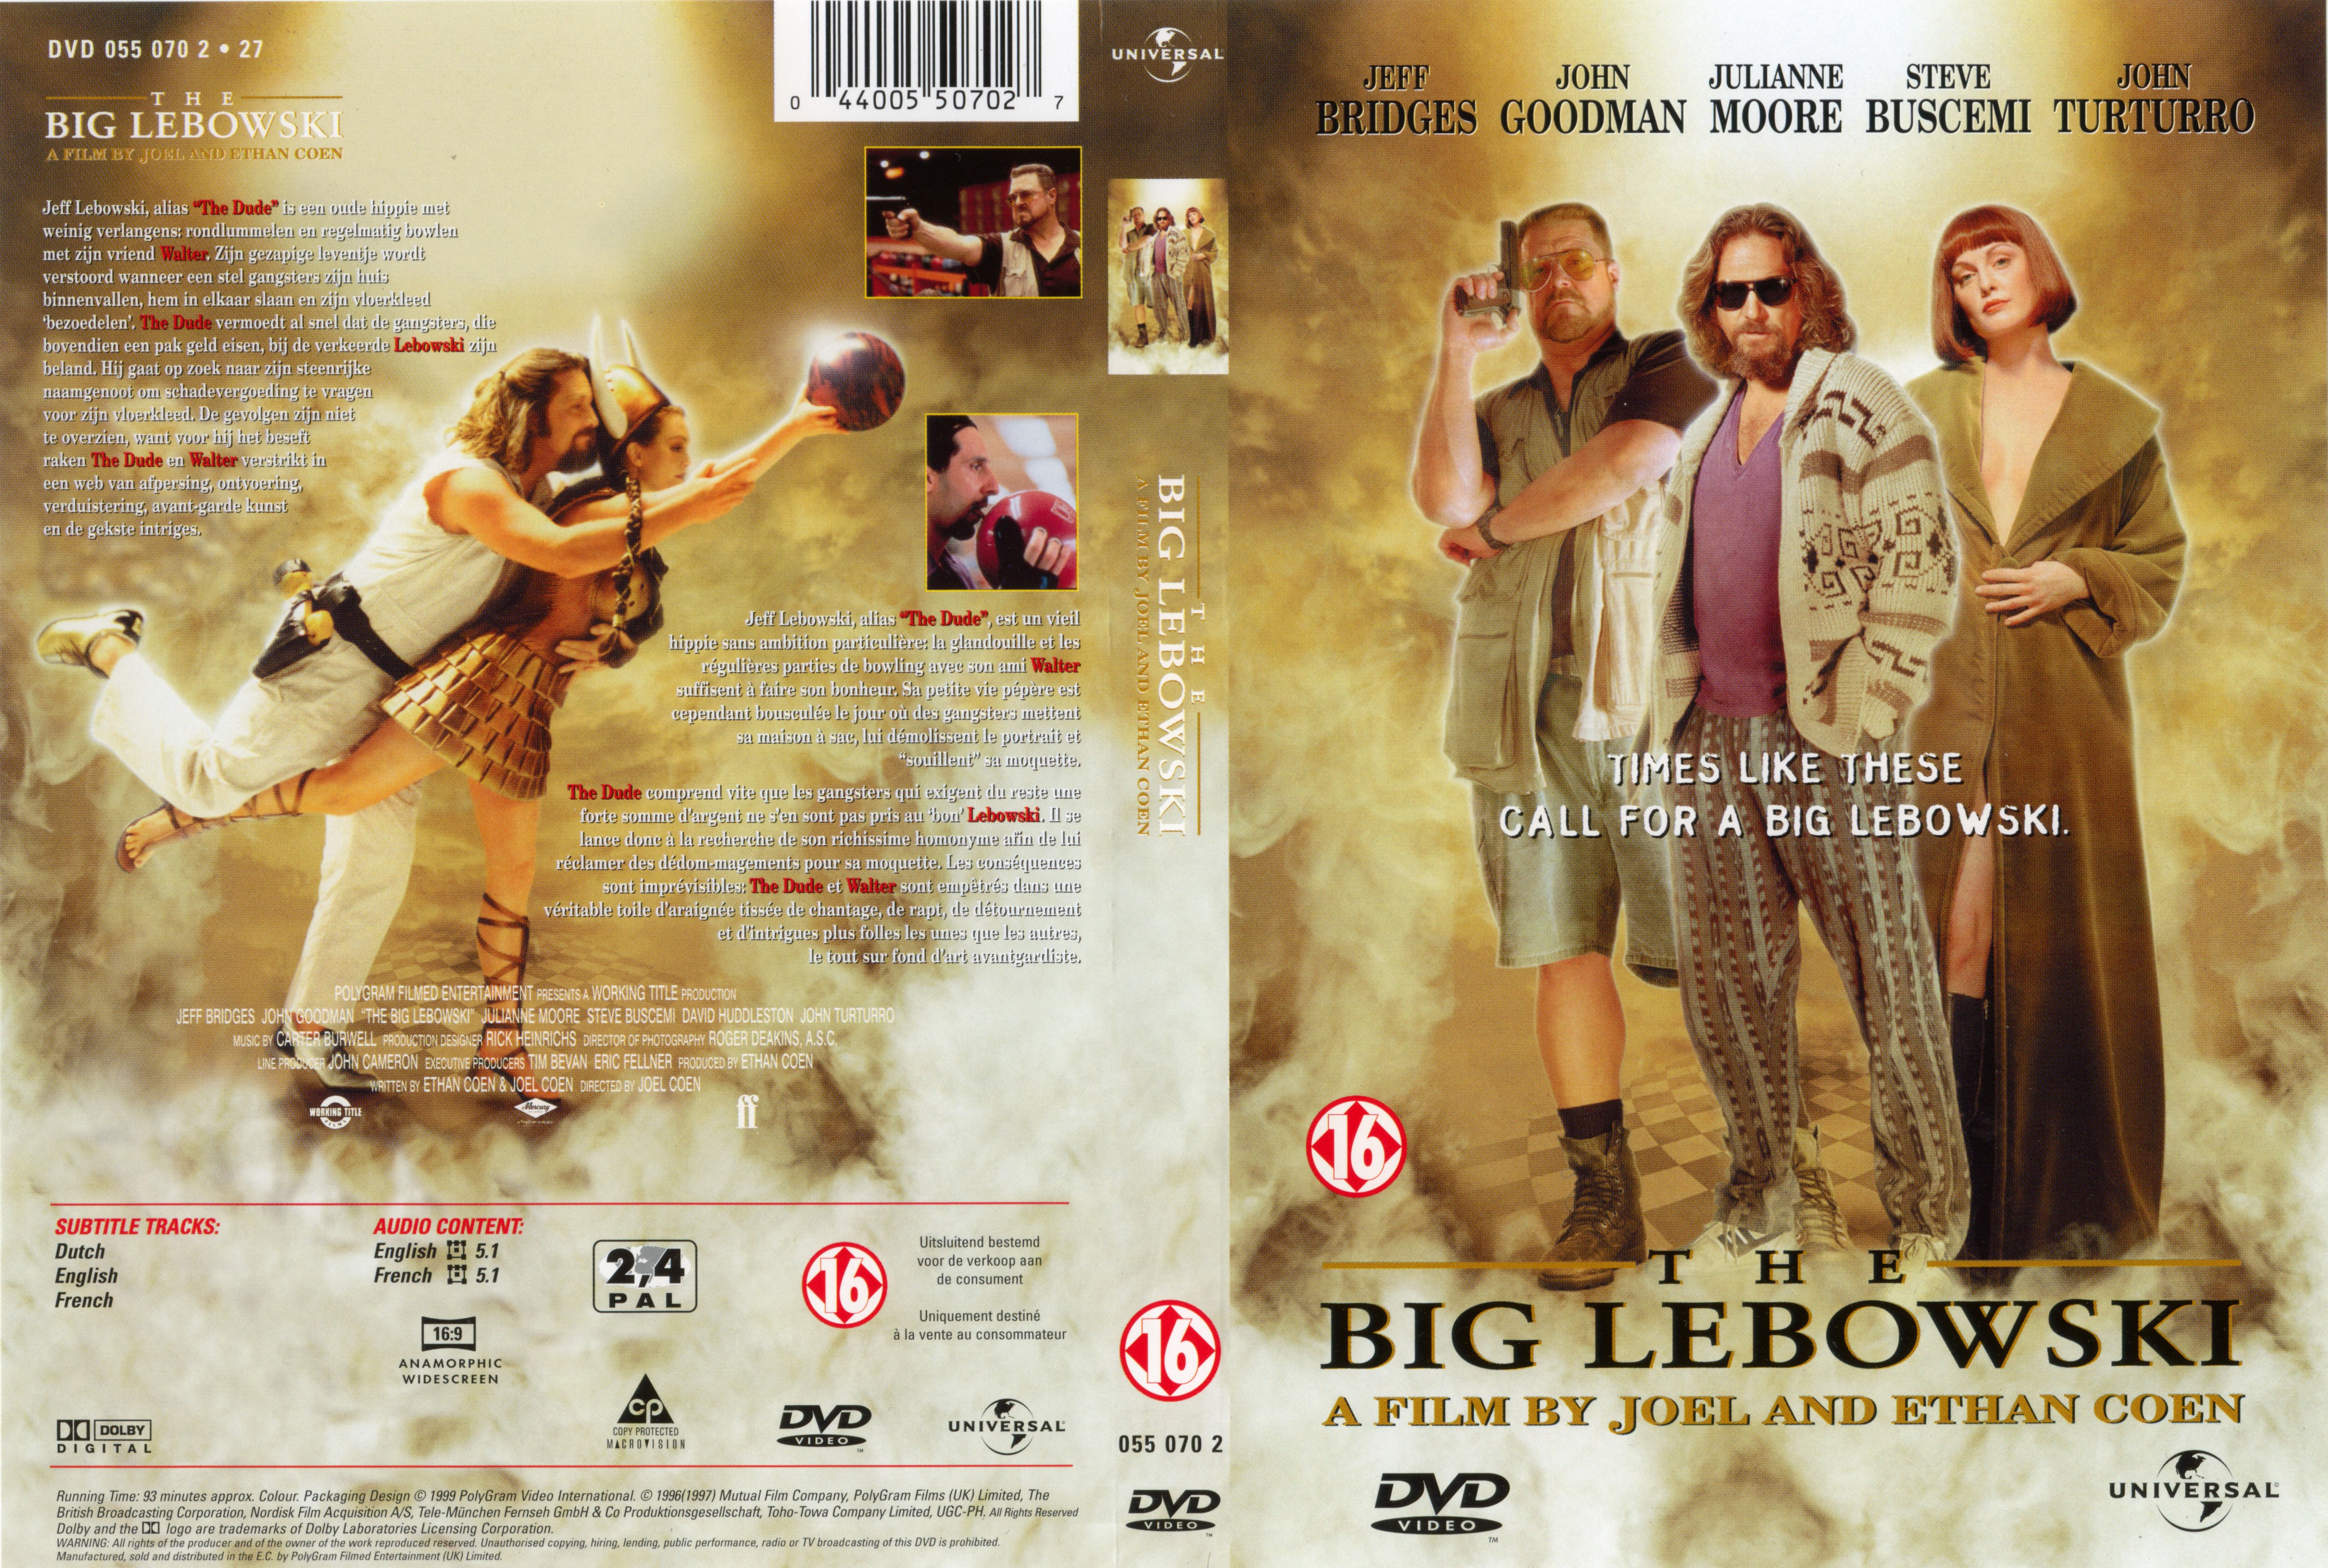 Jaquette DVD The big Lebowski